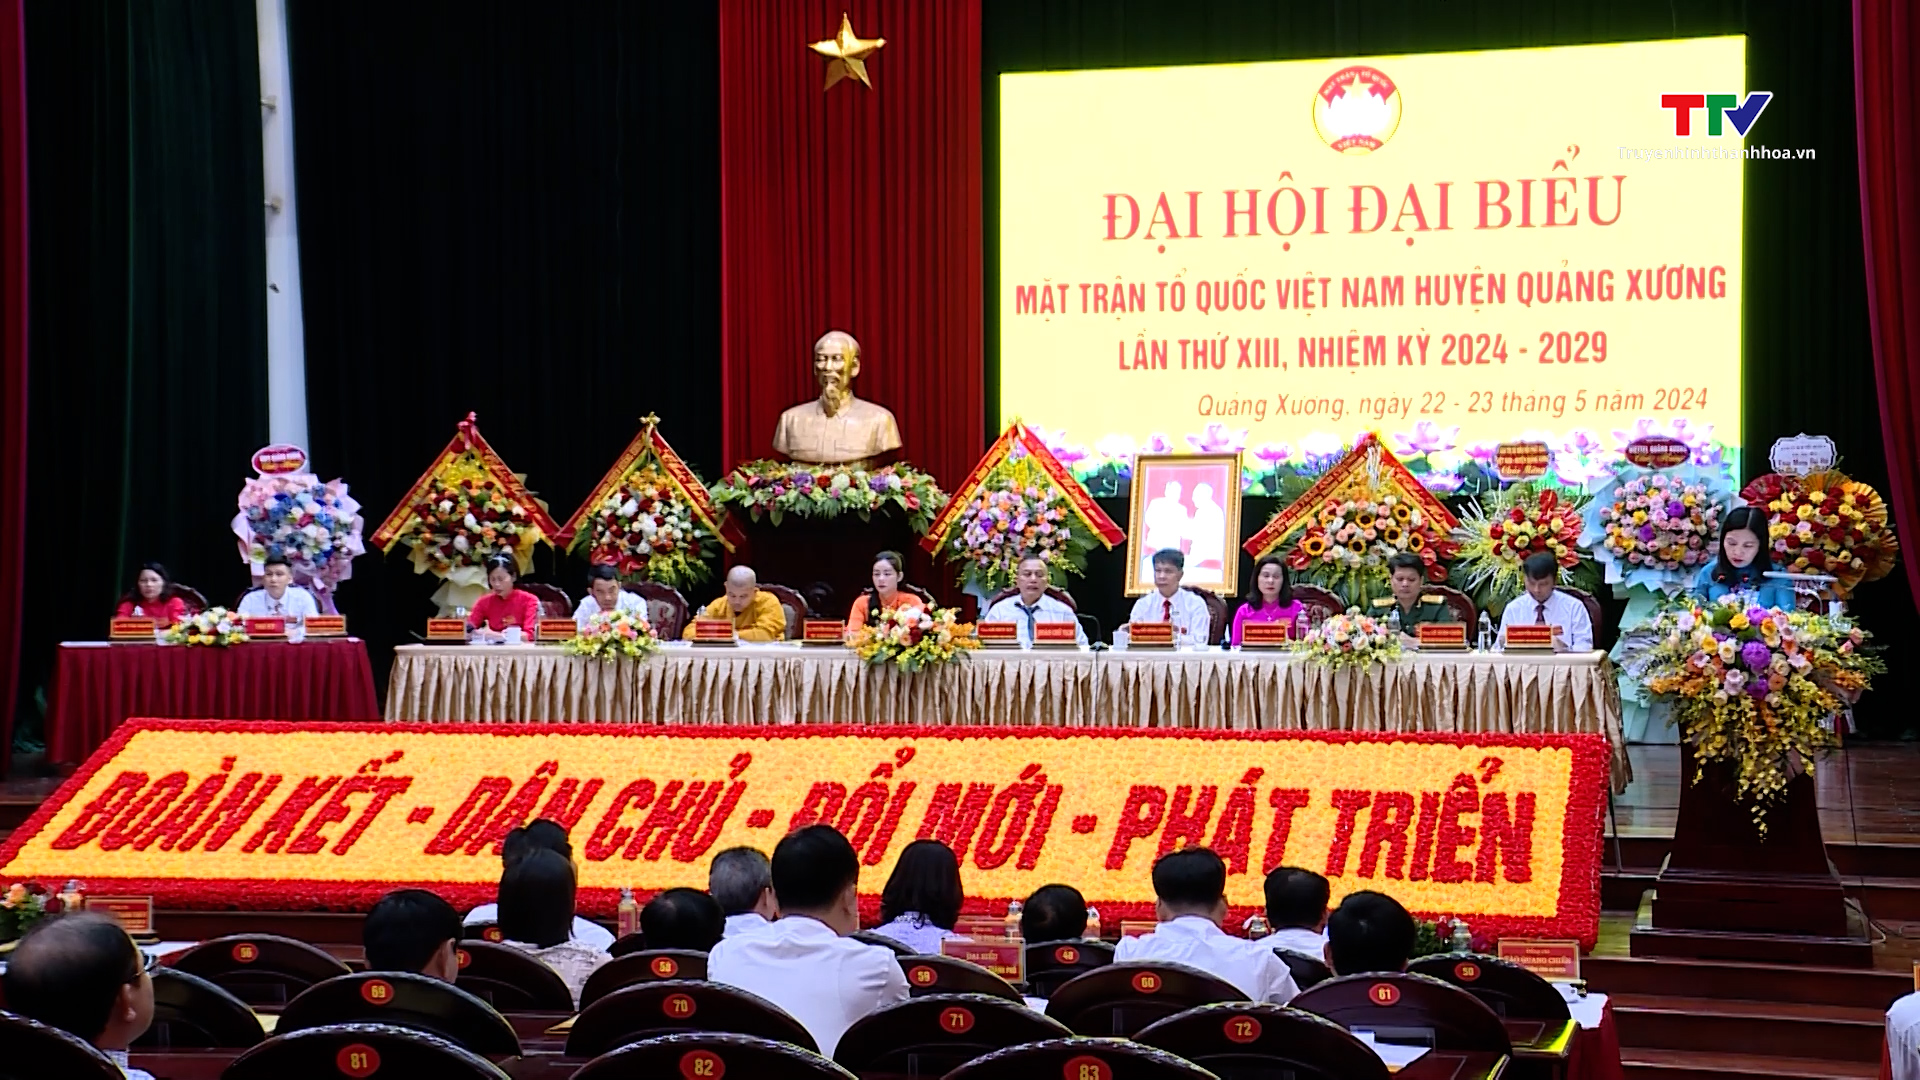 Đại hội đại biểu Mặt trận Tổ quốc huyện Quảng Xương lần thứ XIII, nhiệm kỳ 2024-2029- Ảnh 2.